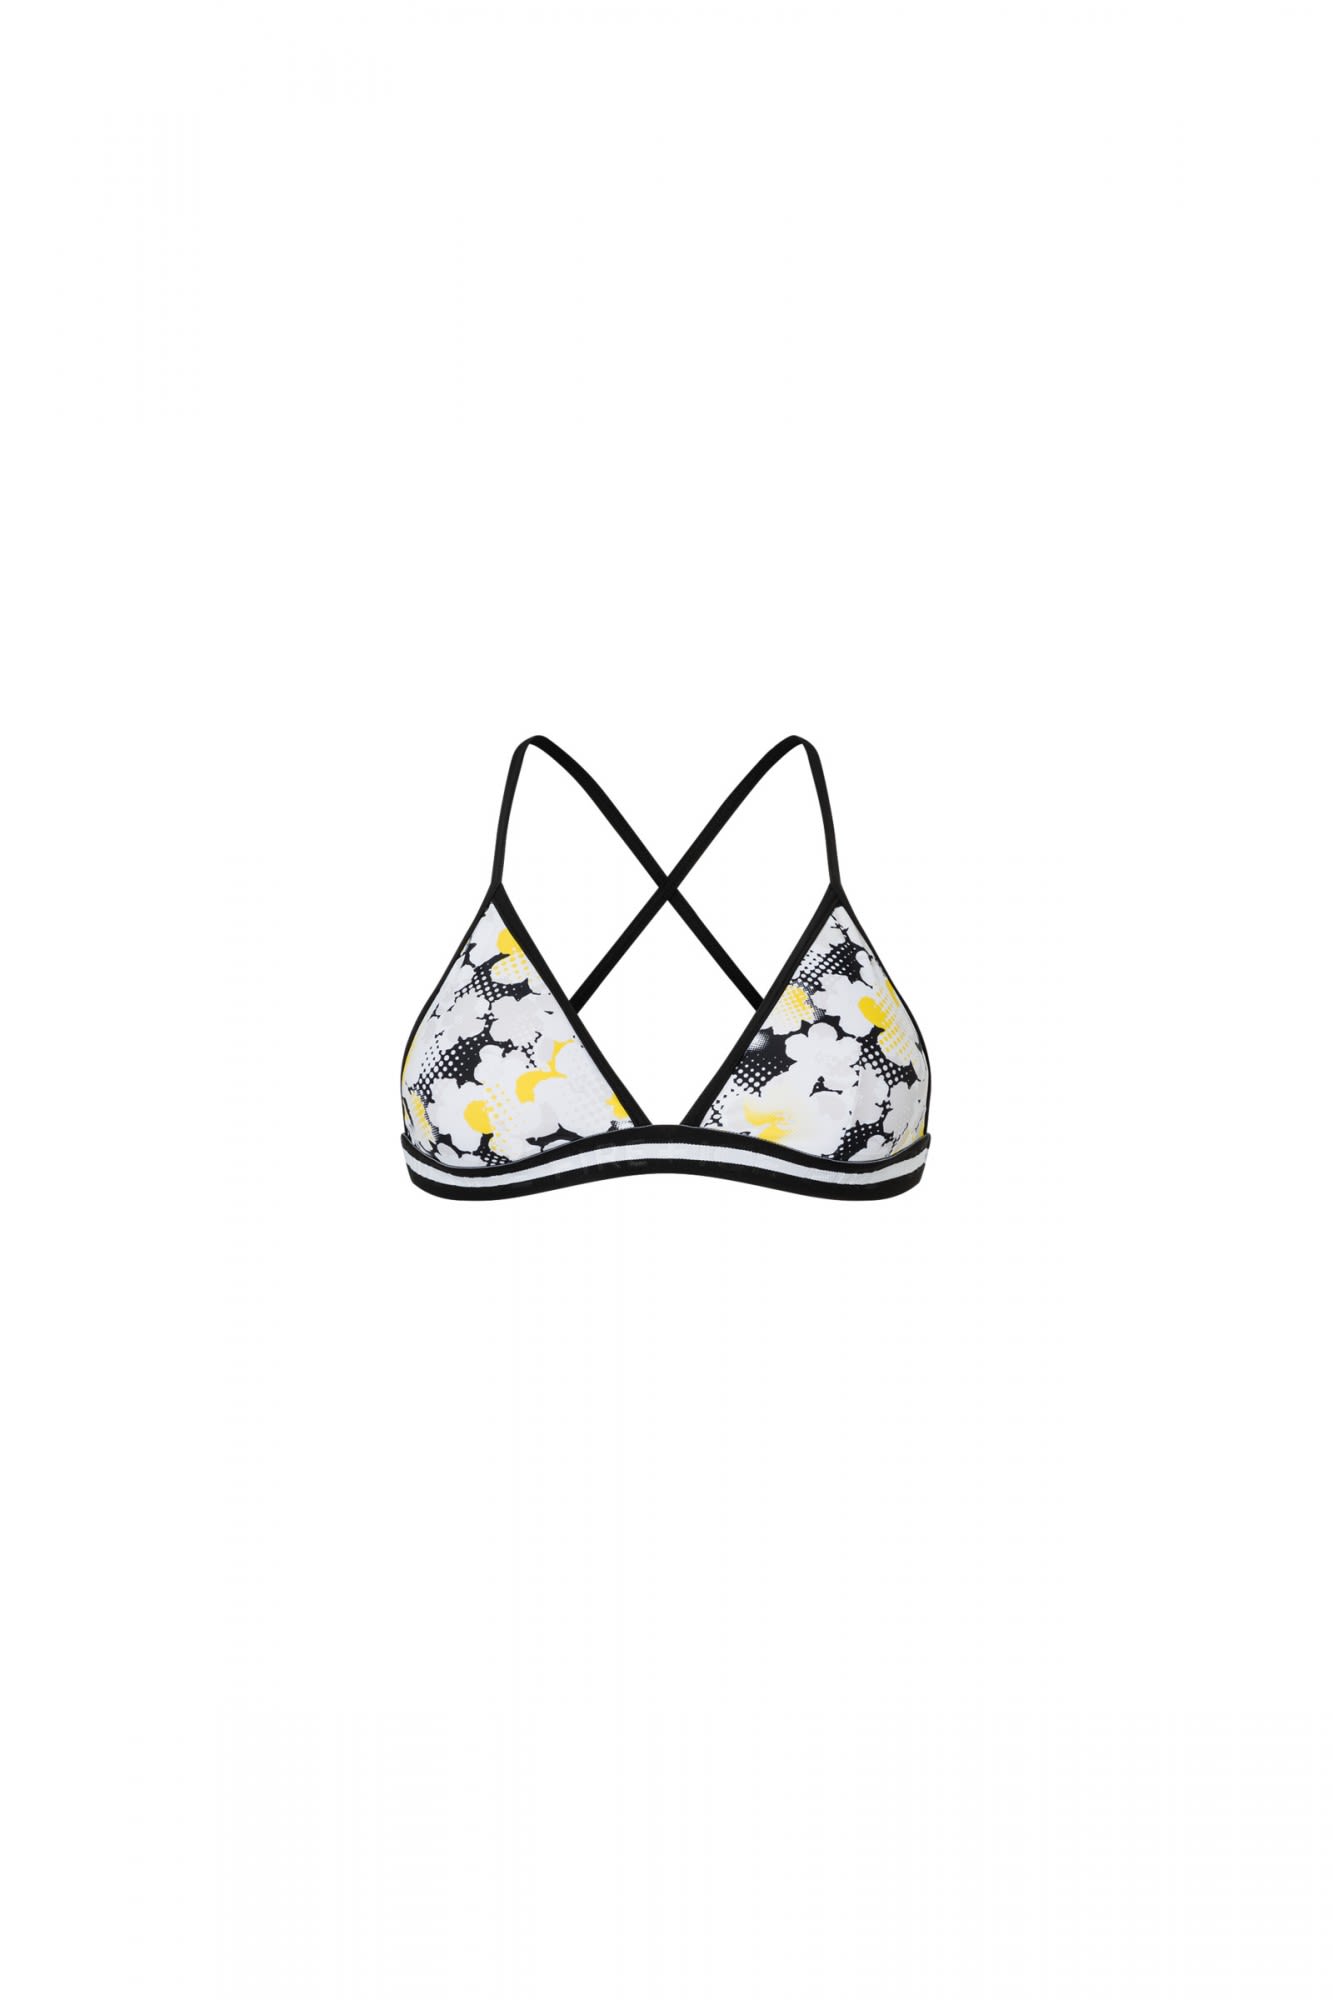 Bogner Fire + Ice Modernes stylisches Damen BikiniOberteil Lemon Drop